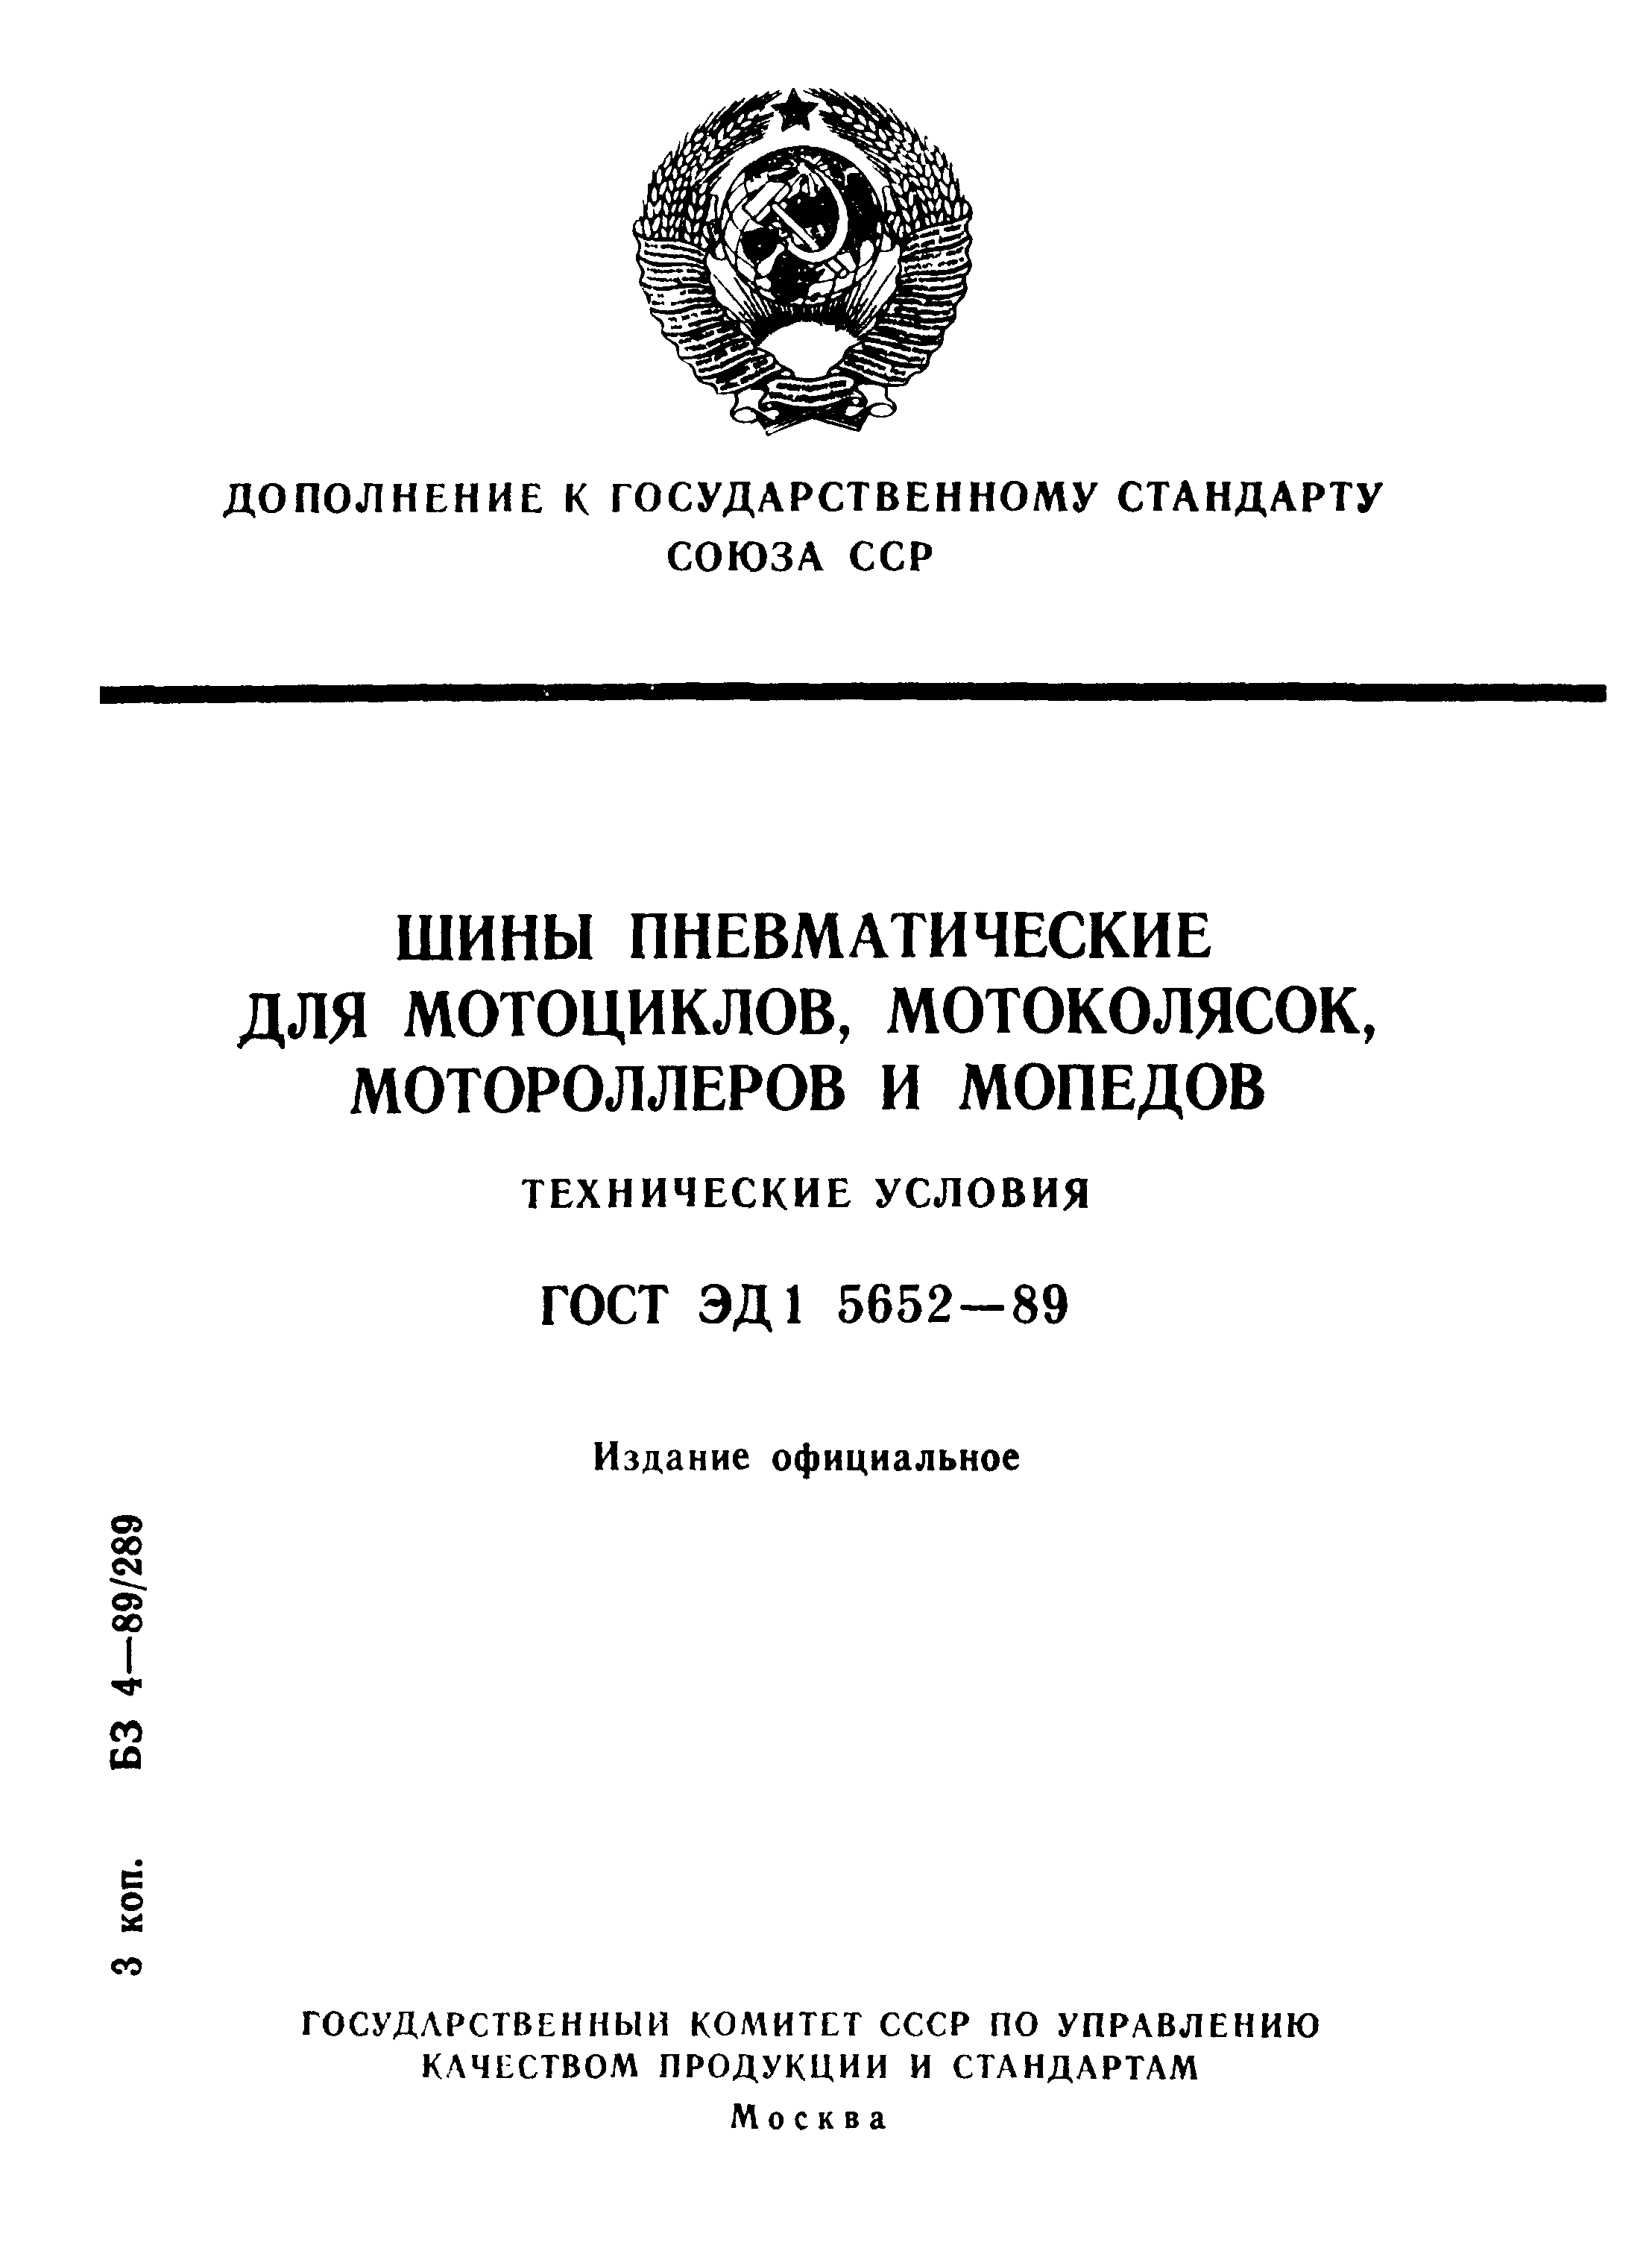 ГОСТ ЭД1 5652-89